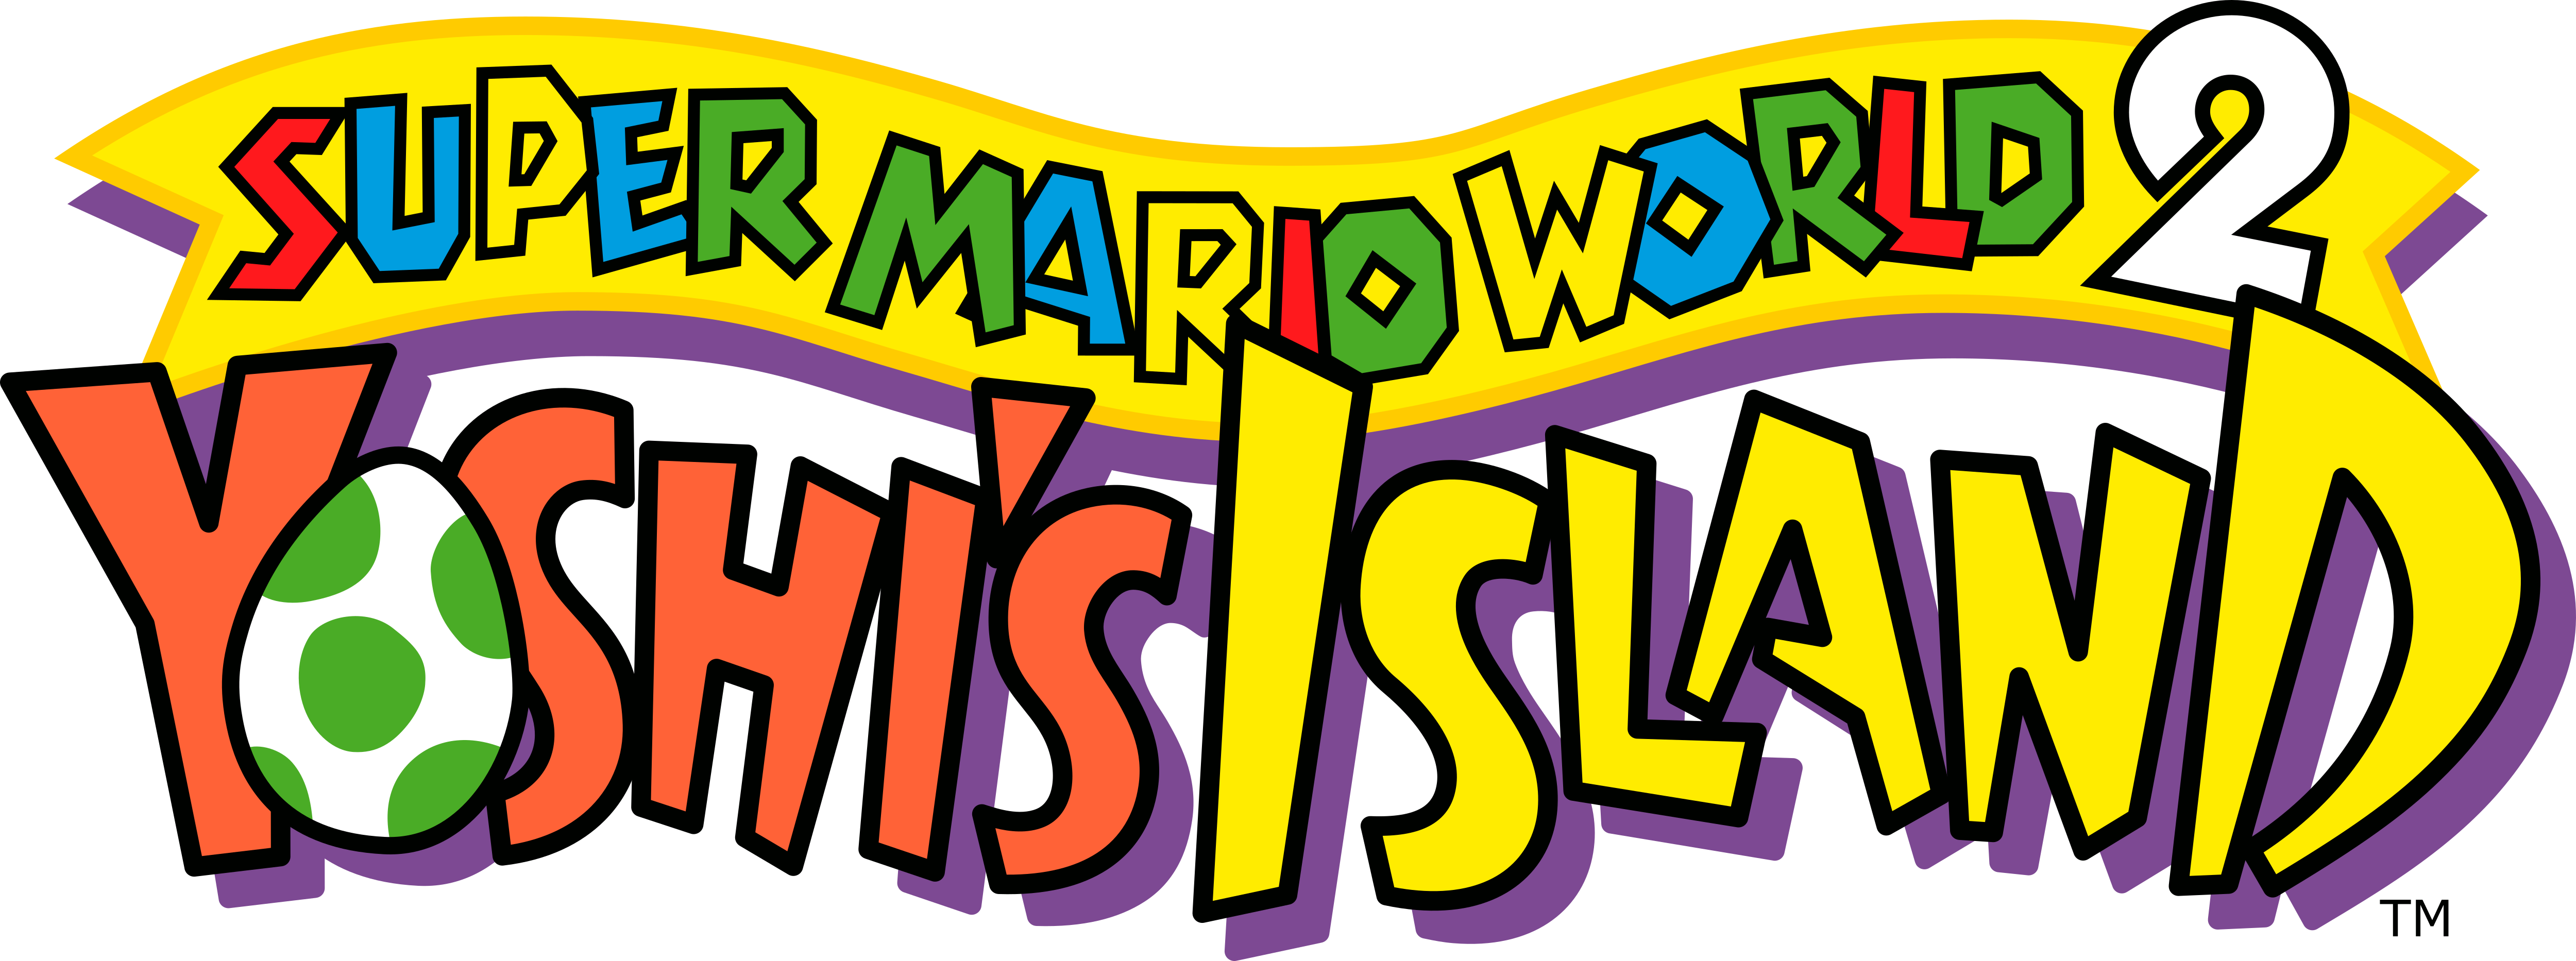 Super Mario World 2 Yoshi’s Island Logo No Background